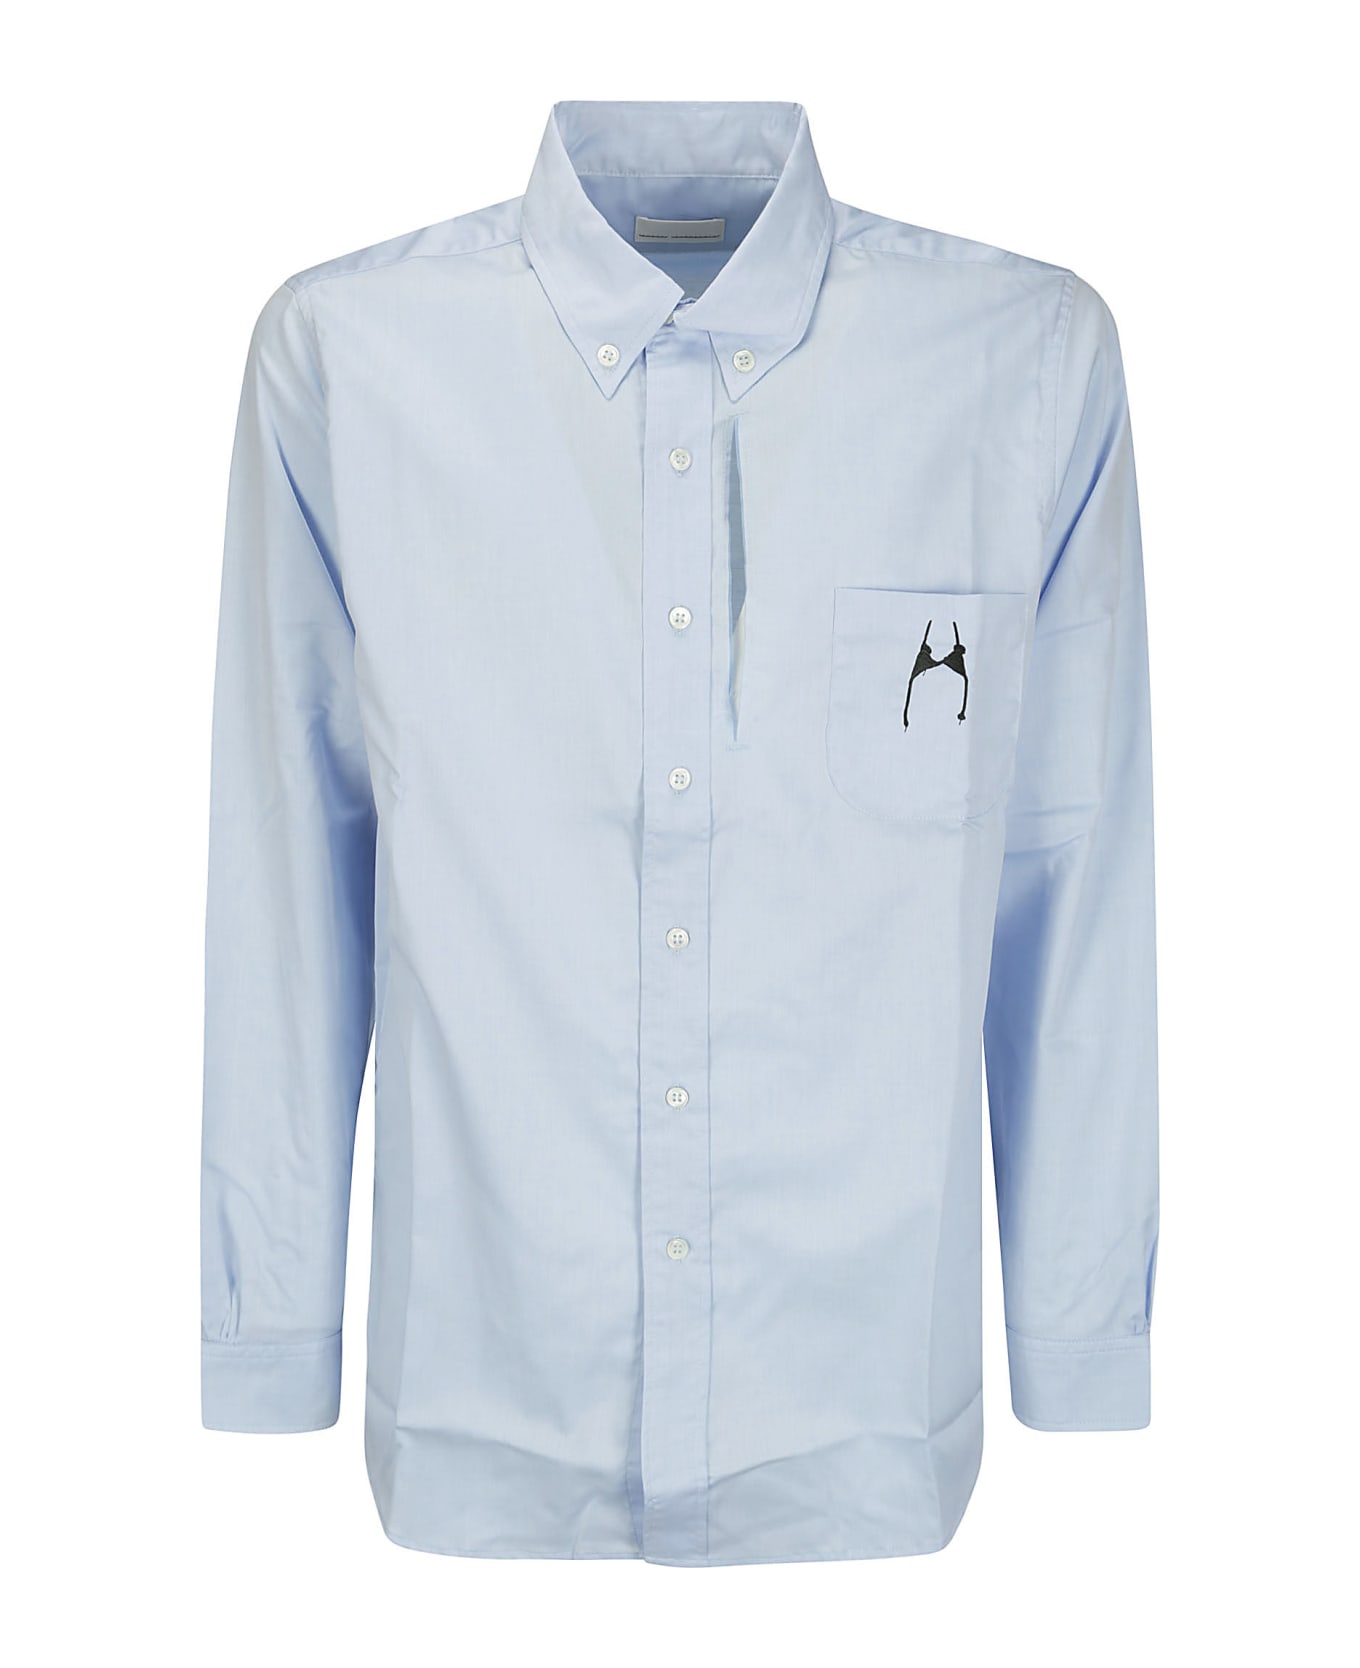 Random Identities Men Classic Shirt Small Bra Print W - BLUE